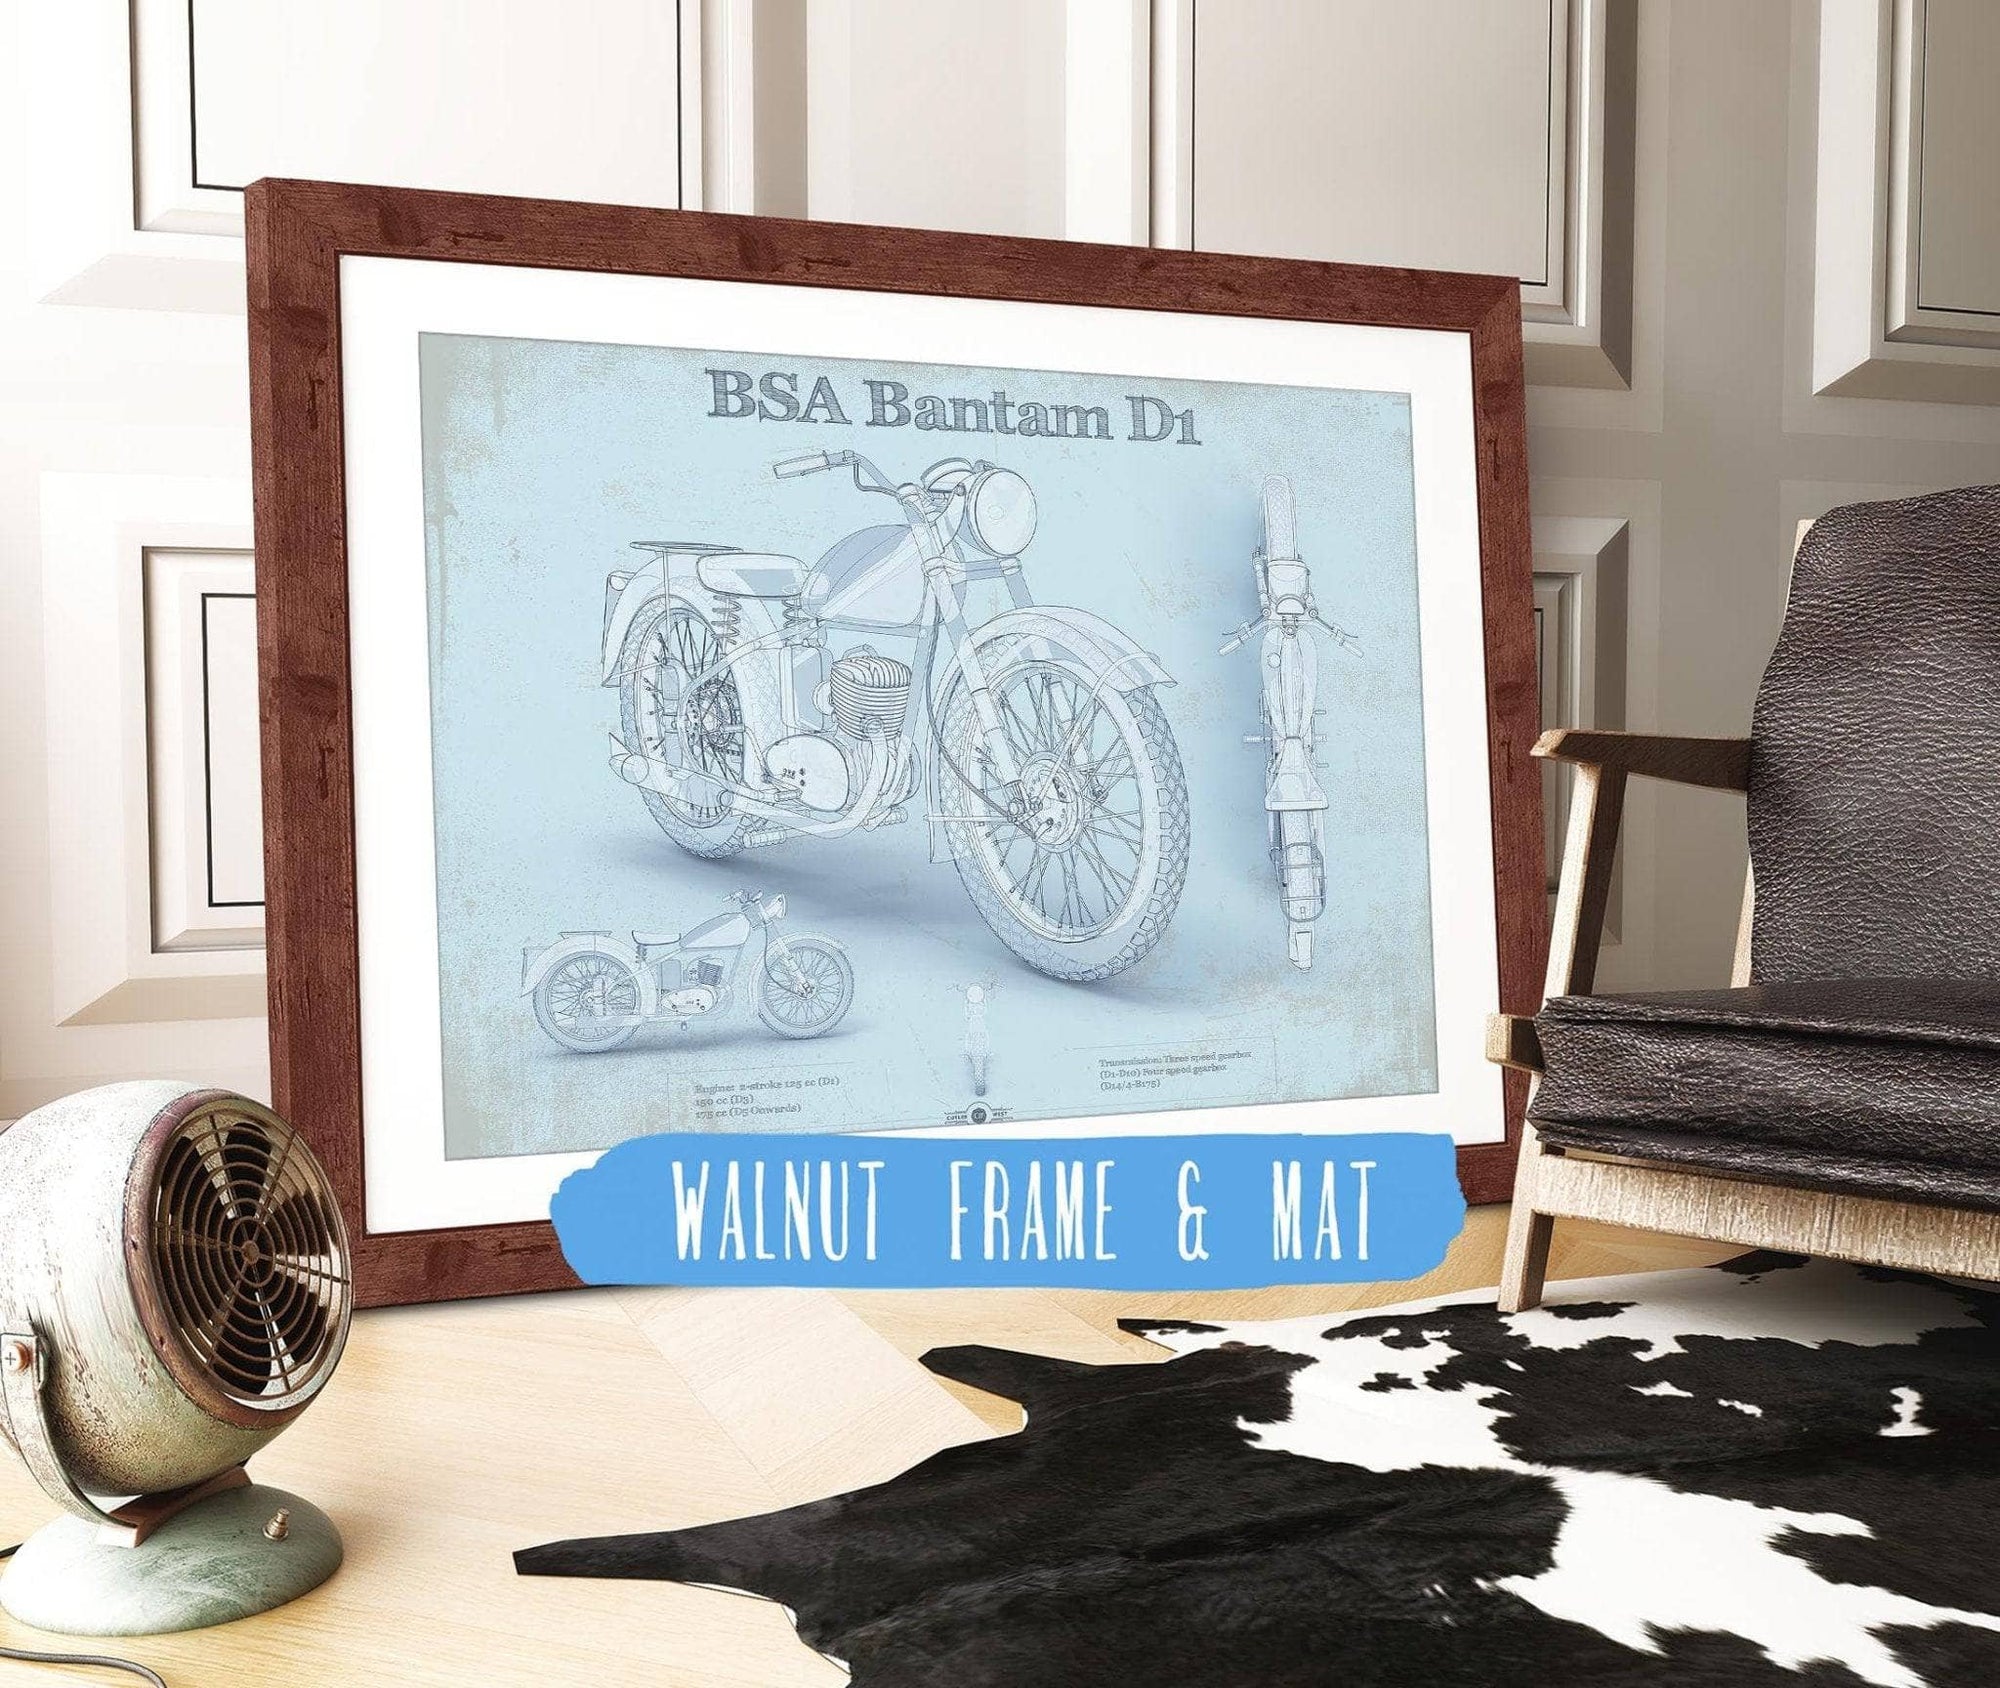 Cutler West 14" x 11" / Walnut Frame & Mat BSA Bantam D1 Blueprint Motorcycle Patent Print 833110063_46365